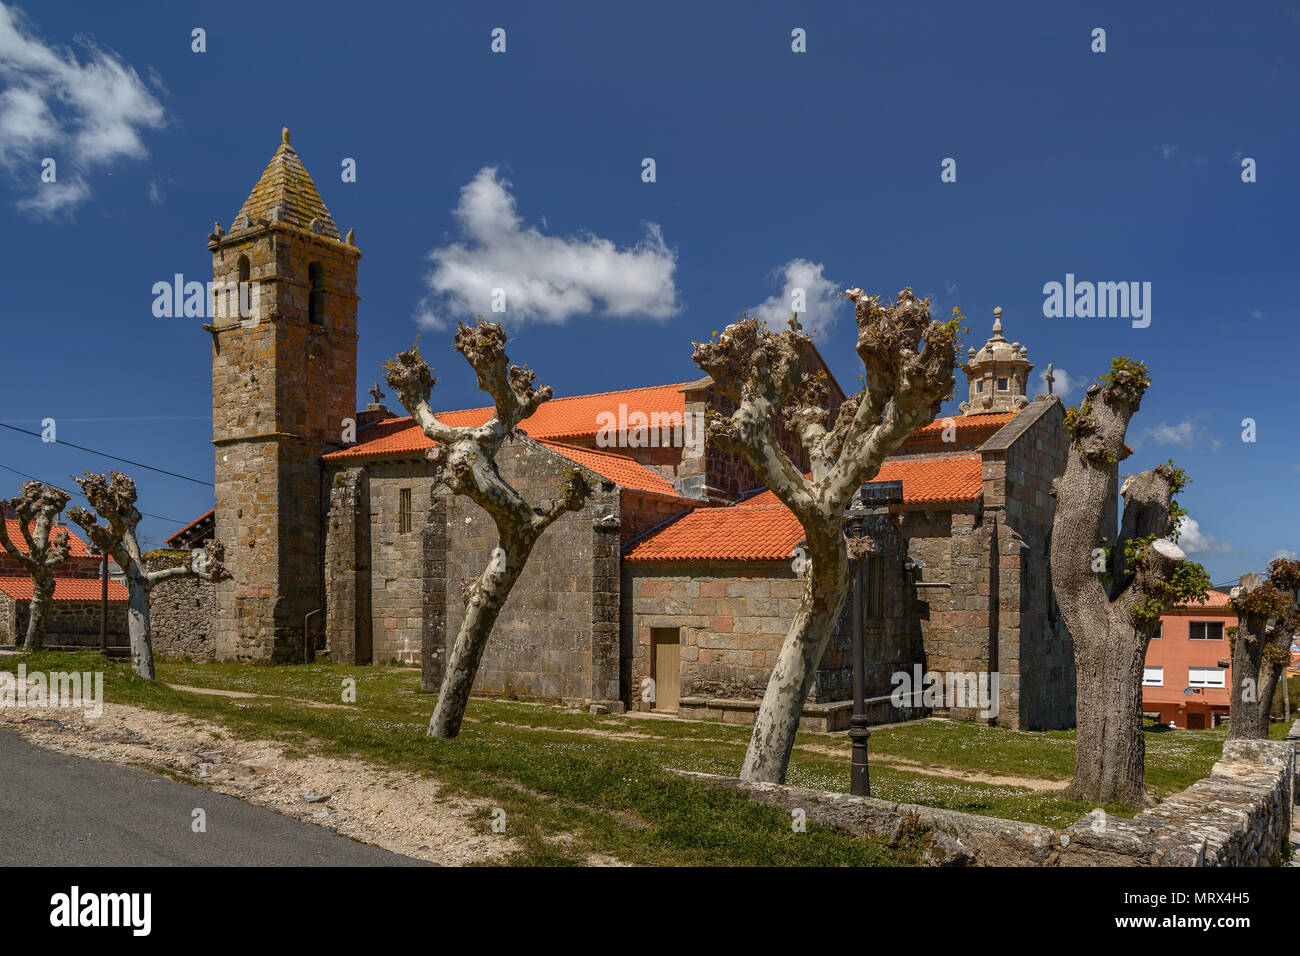 Church Santa Maria, Fisterra, Cape Finistere, province, La Coruna region, Galicia, Spain Stock Photo